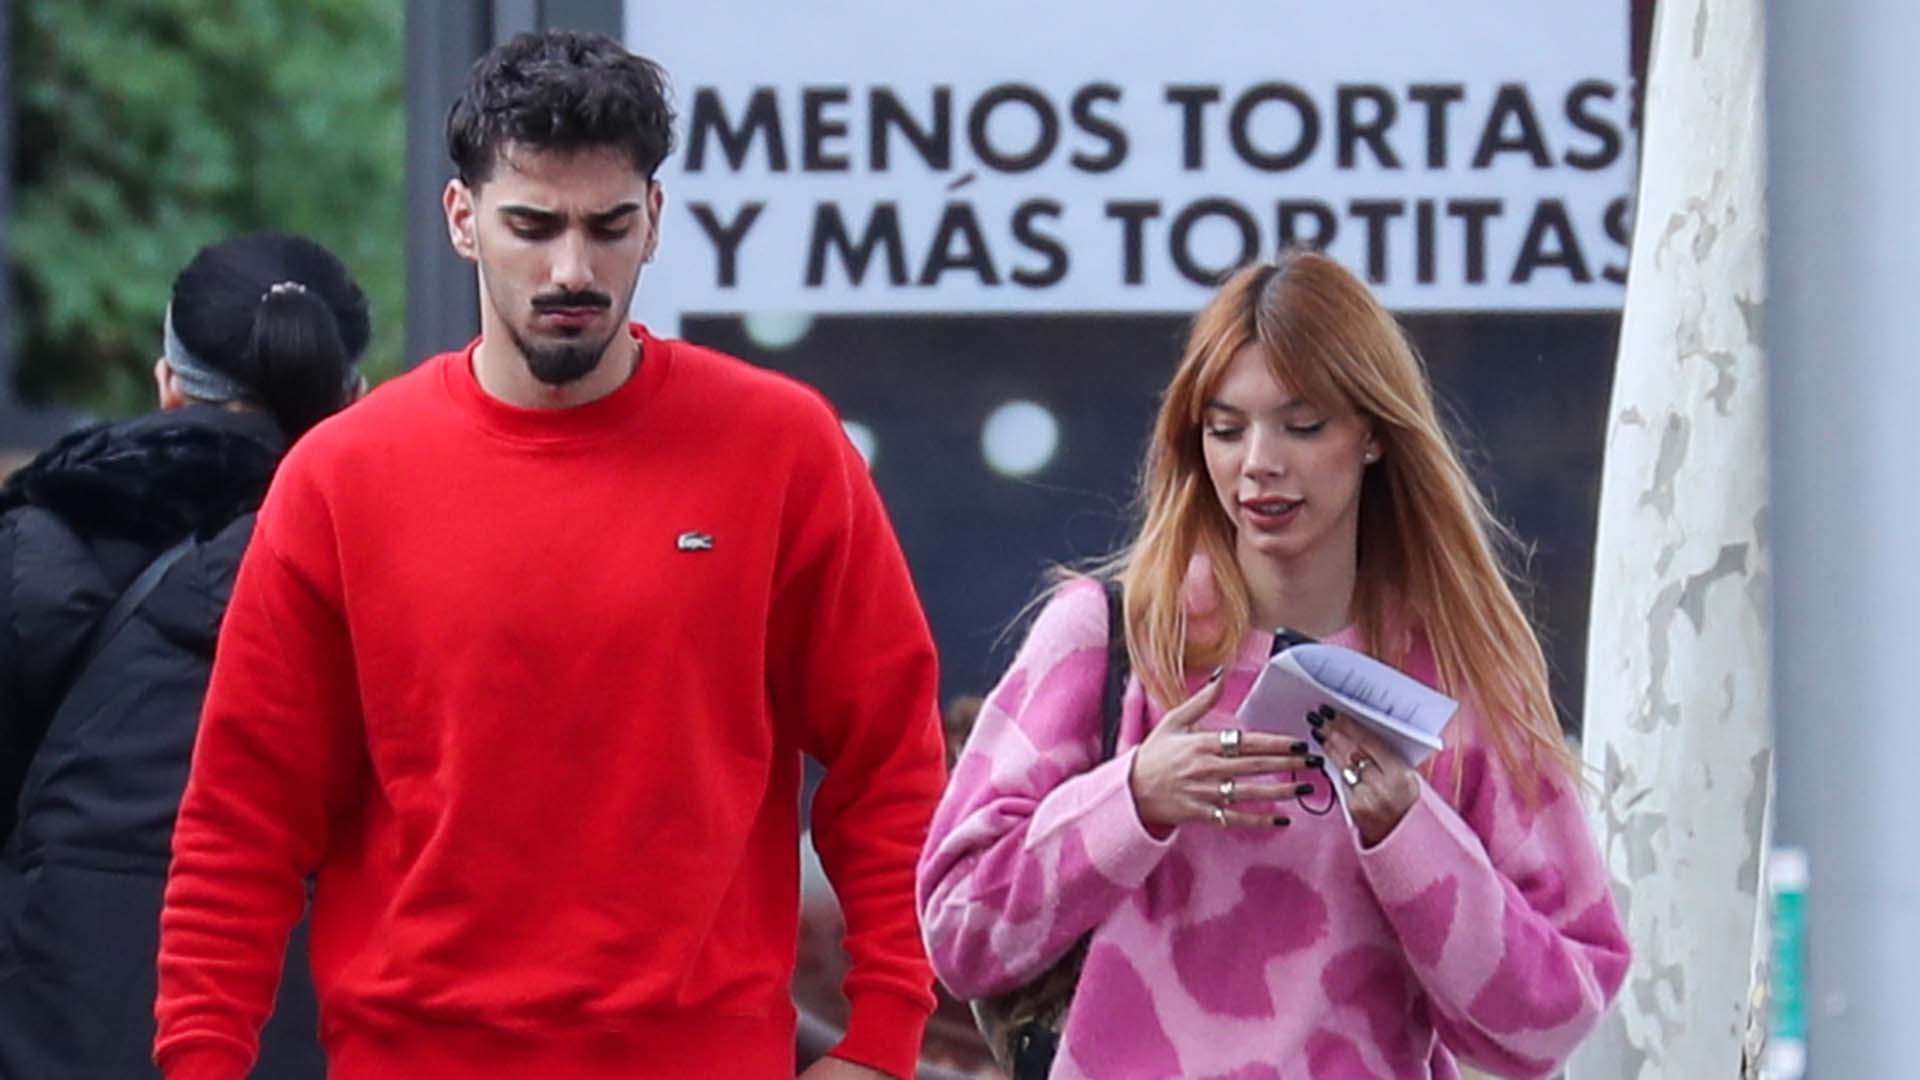 Alejandra Rubio and Carlos Aguera in Madrid, 18 November 2021